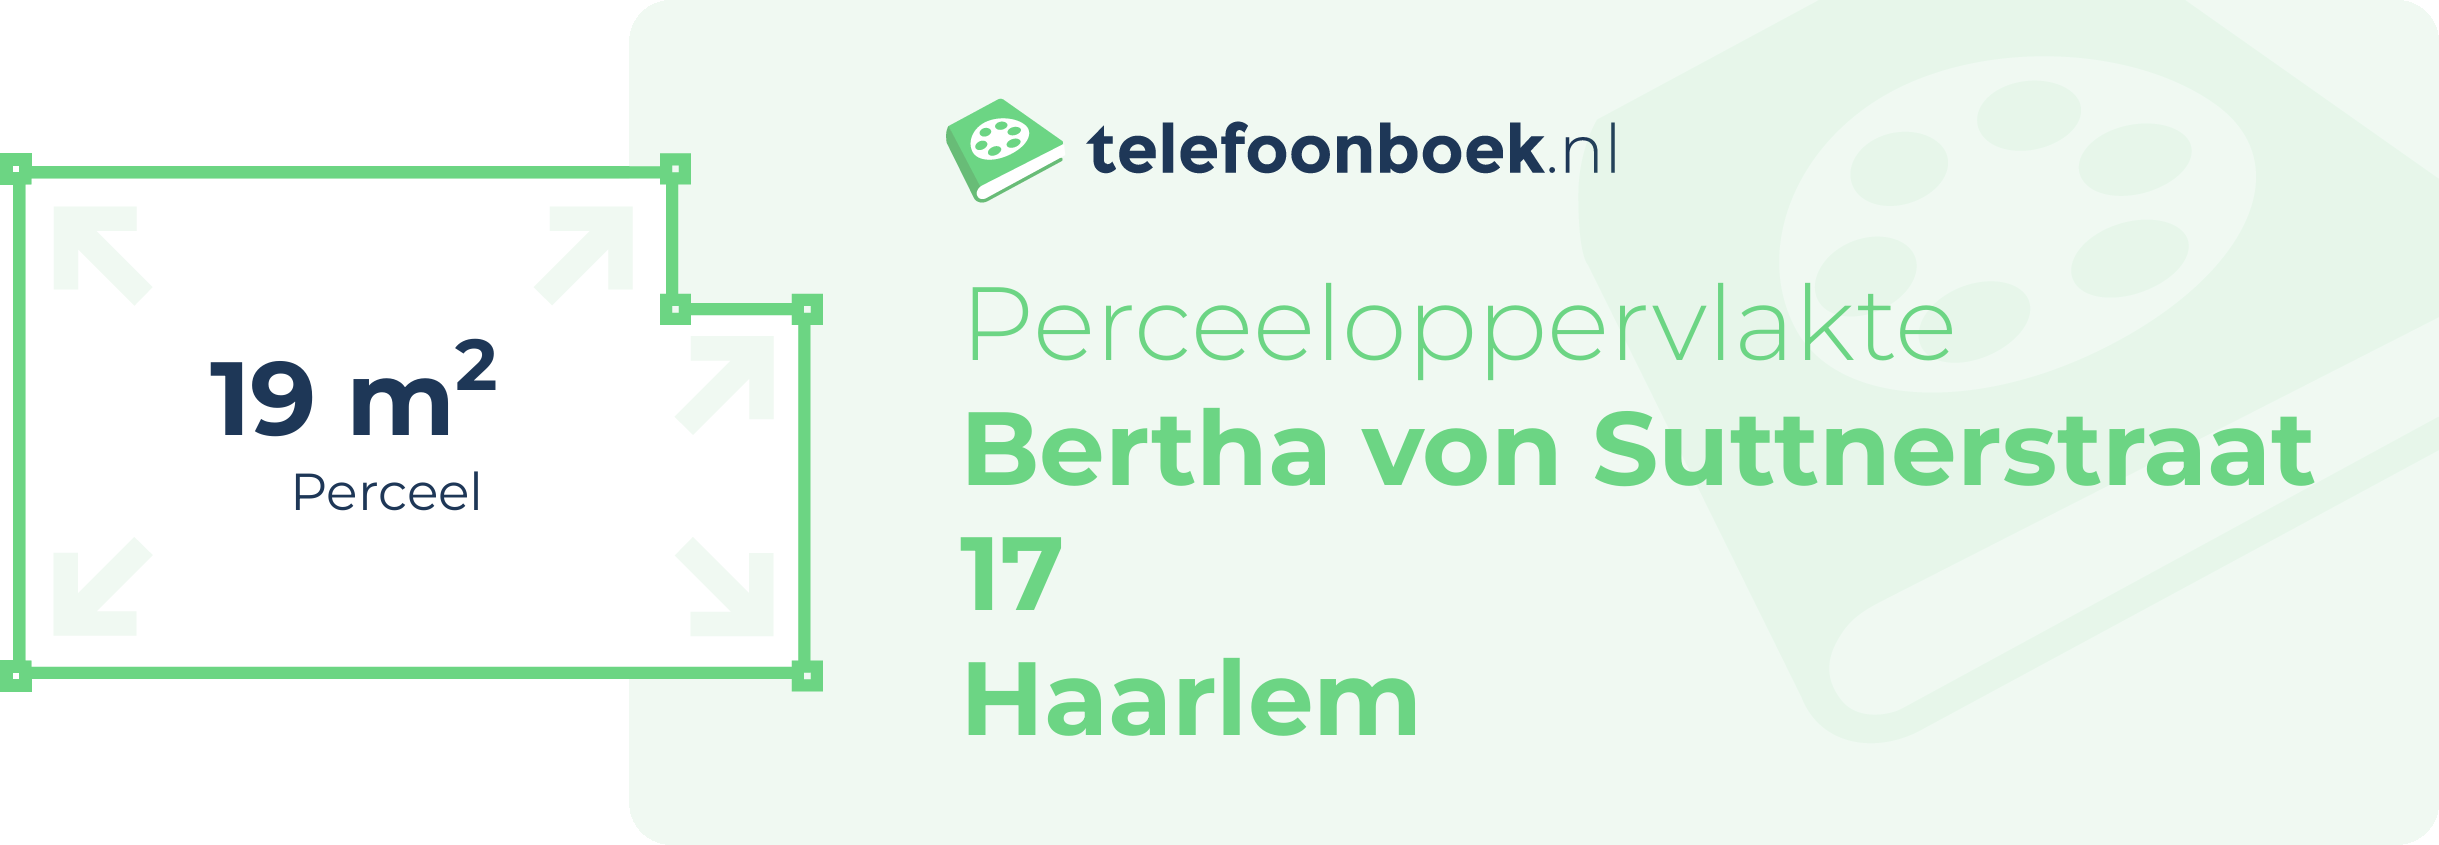 Perceeloppervlakte Bertha Von Suttnerstraat 17 Haarlem